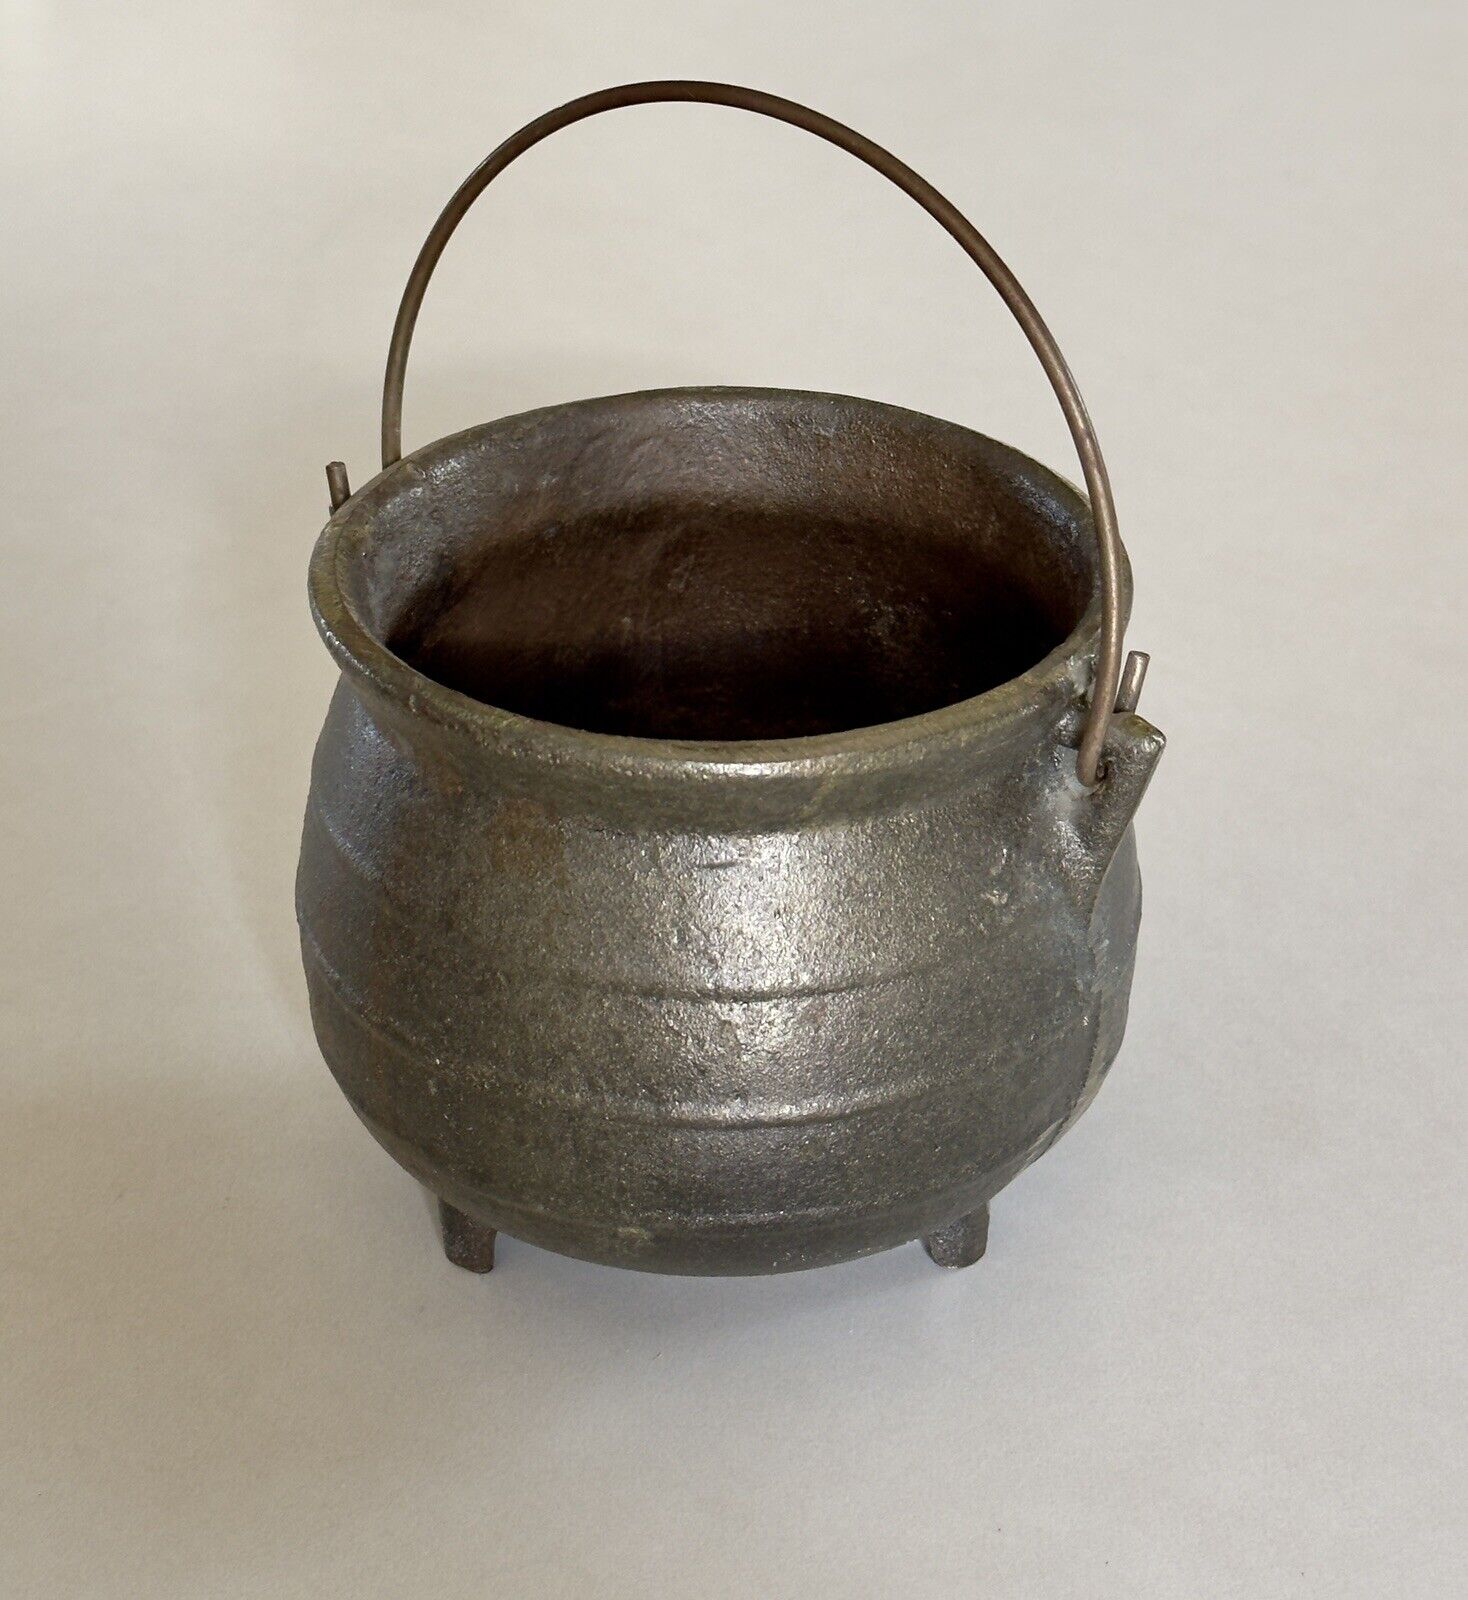 Antique Black Cast Iron Cauldron 3 Leg Vintage OLD Primitive Cauldron Handle Pot